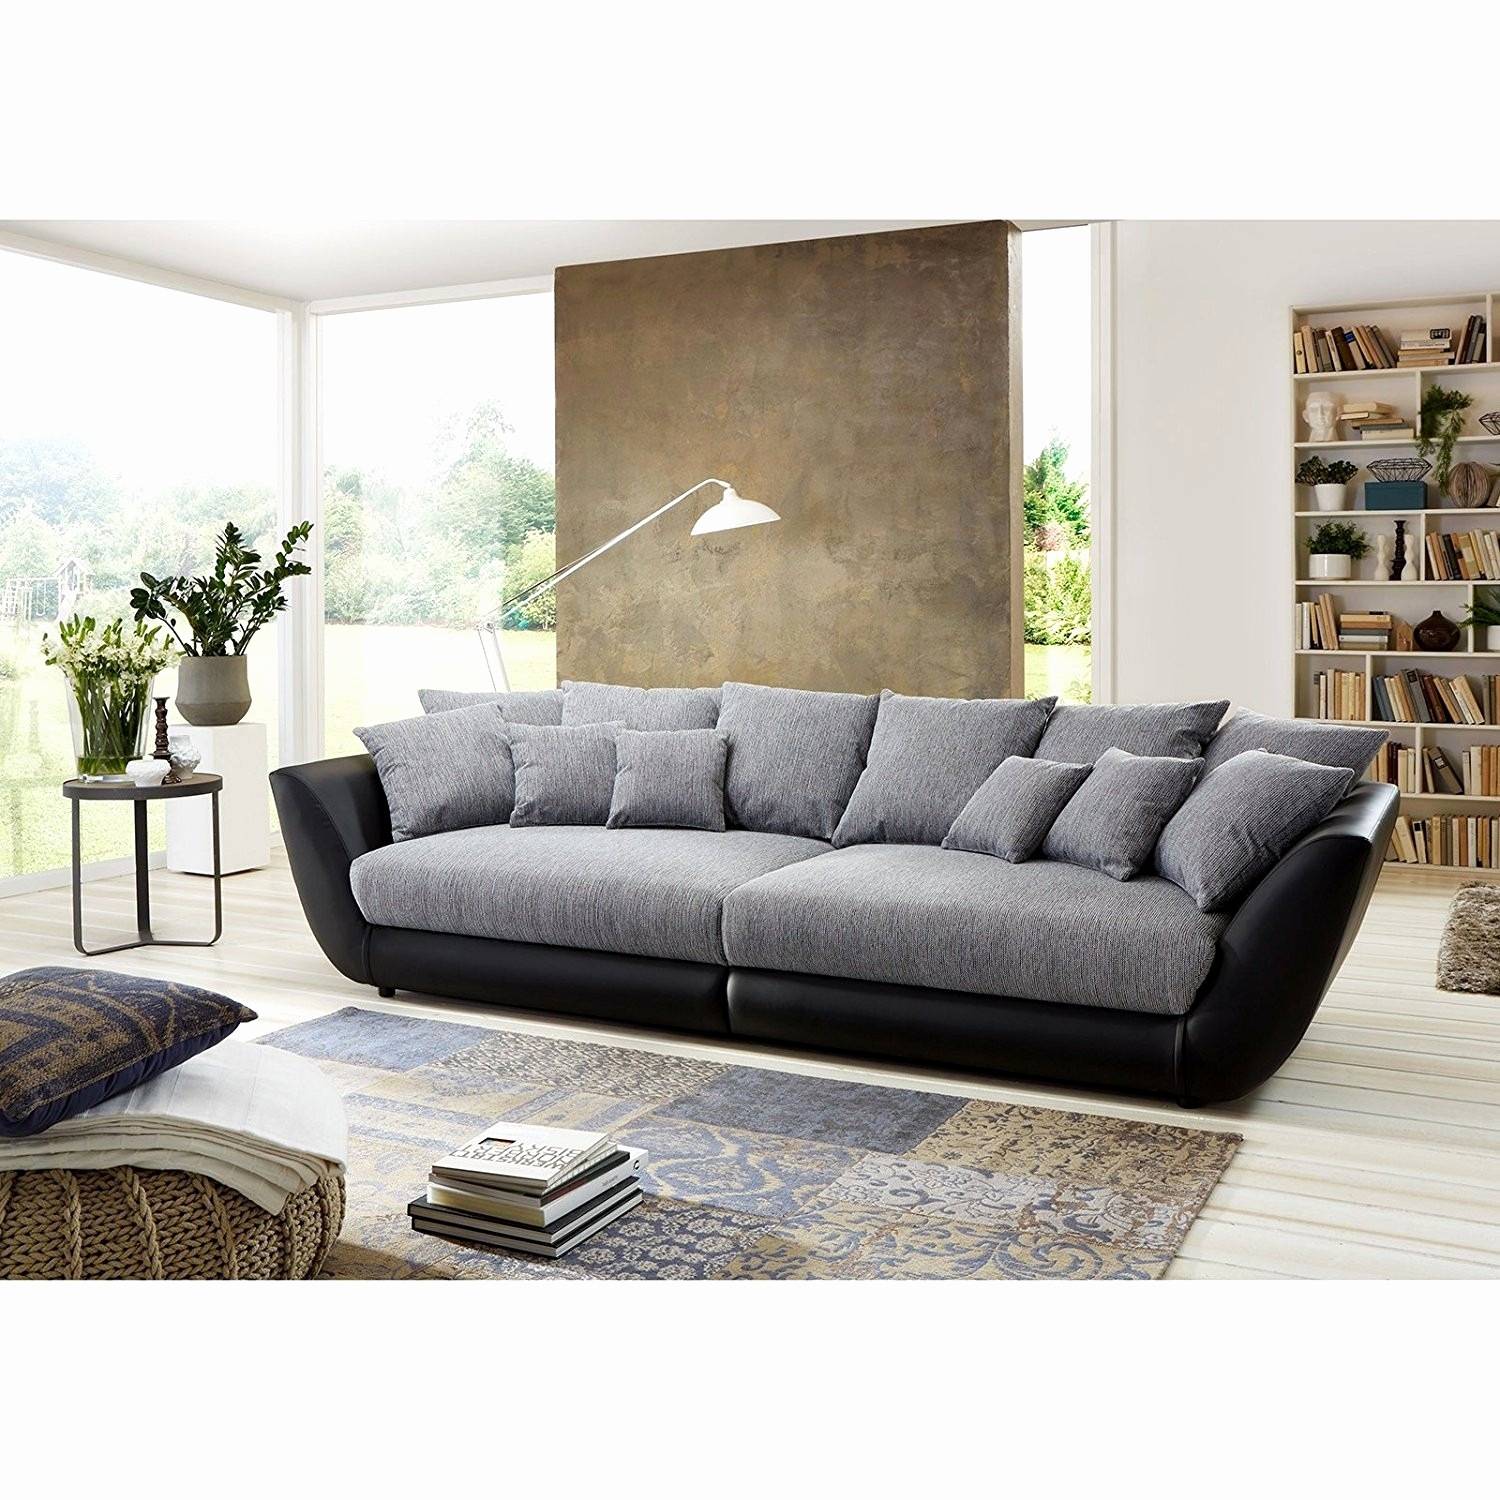 wohnzimmer deko grau lovely couch schwarz luxus decken dekoration wohnzimmer frisch couch decke of wohnzimmer deko grau